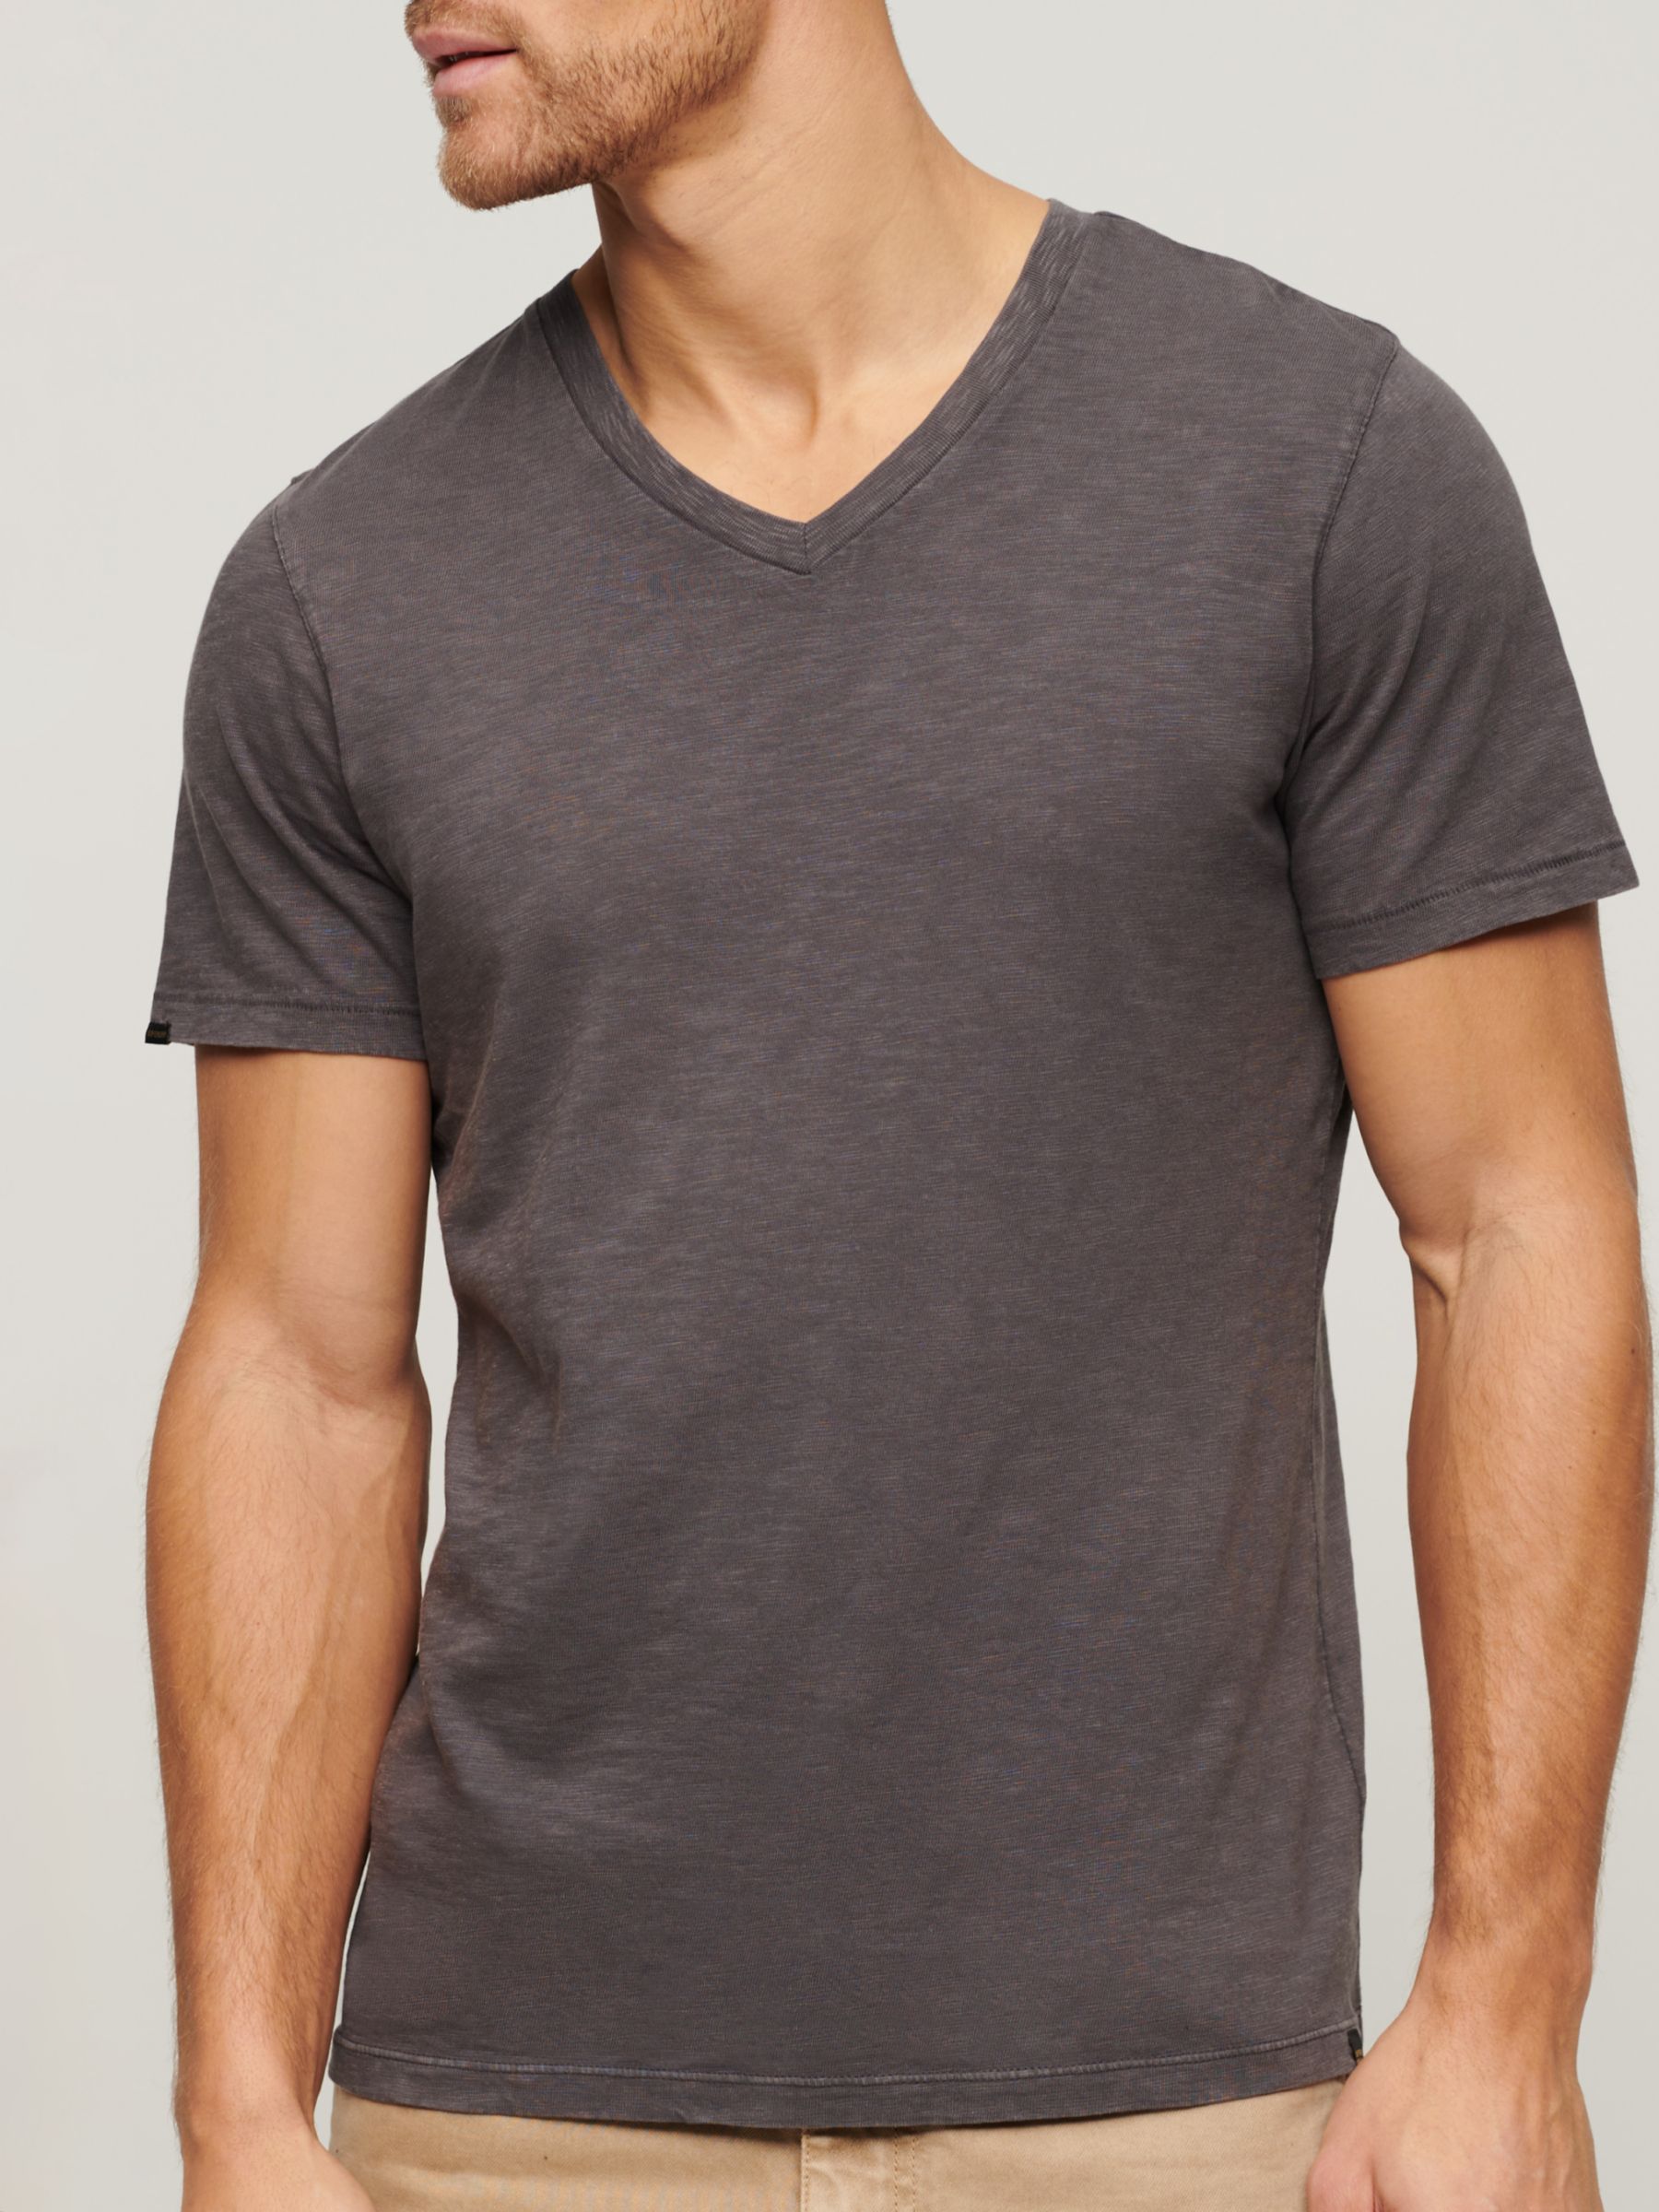 Buy Superdry V-Neck Slub Short Sleeve T-Shirt Online at johnlewis.com